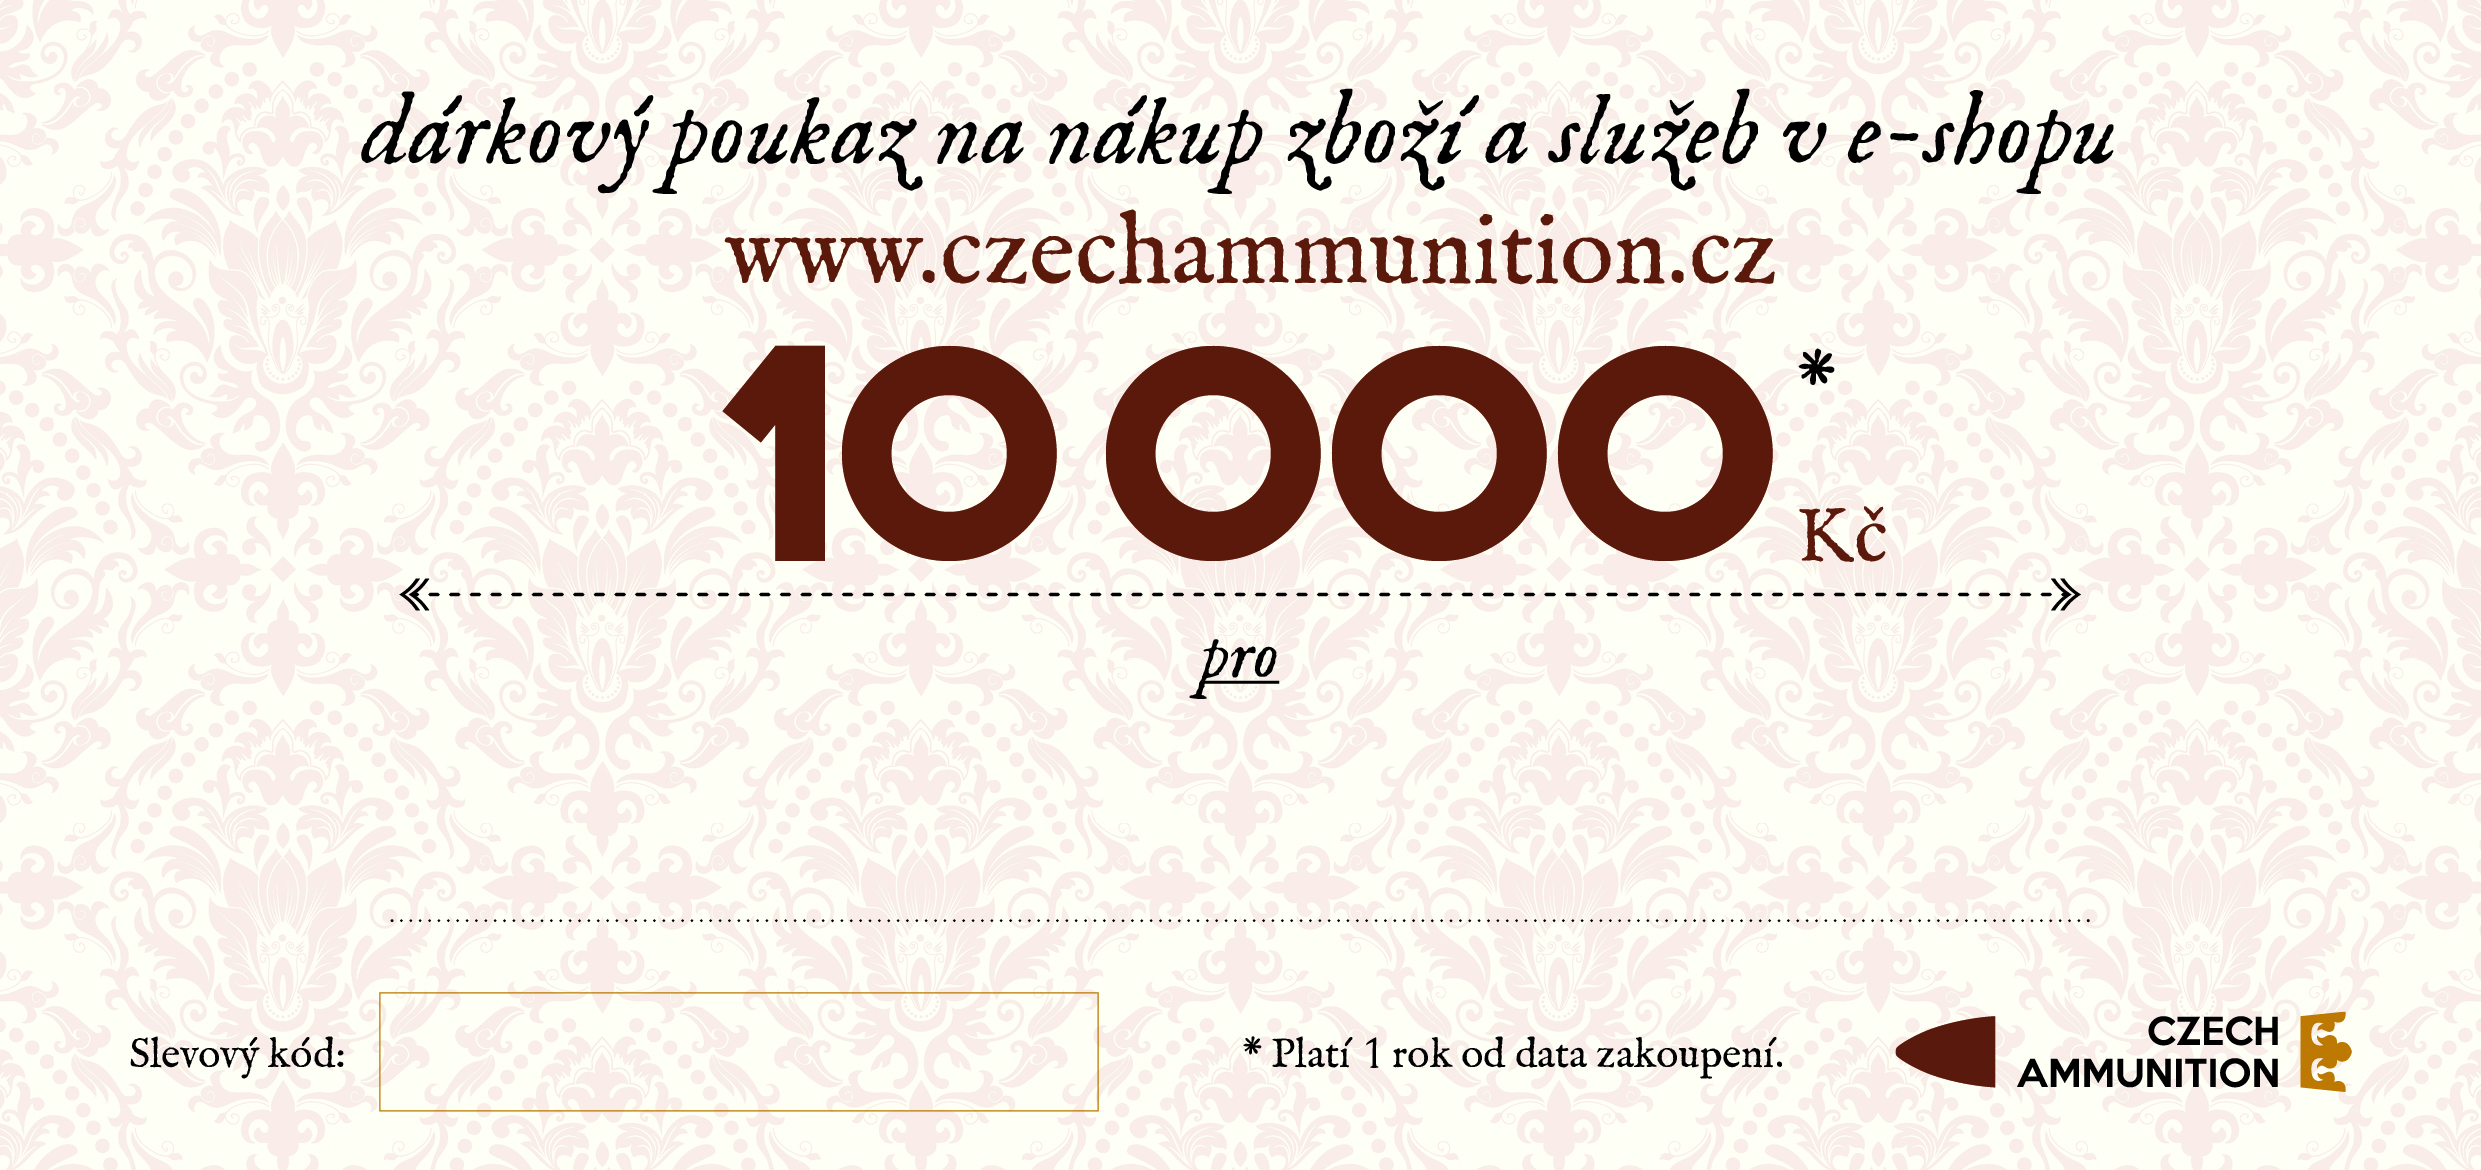 Dárkový poukaz na nákup v e-shopu www.czechammunition.cz v hodnotě 10.000 Kč